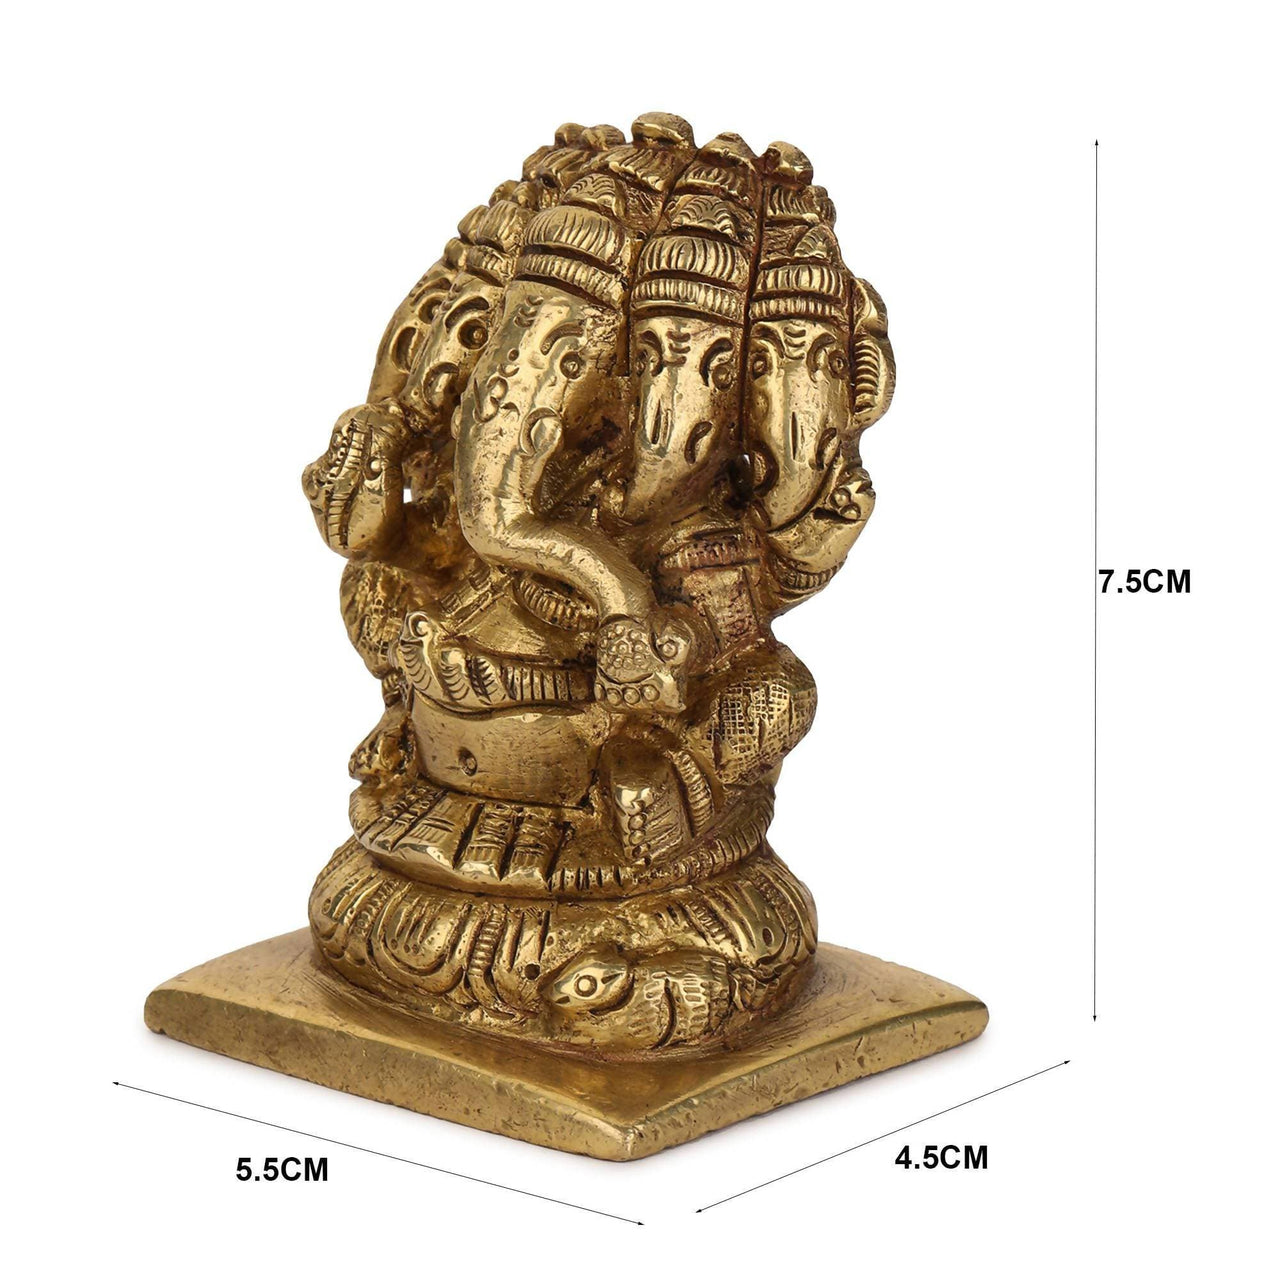 Devlok Panchmukhi Ganesh Idol